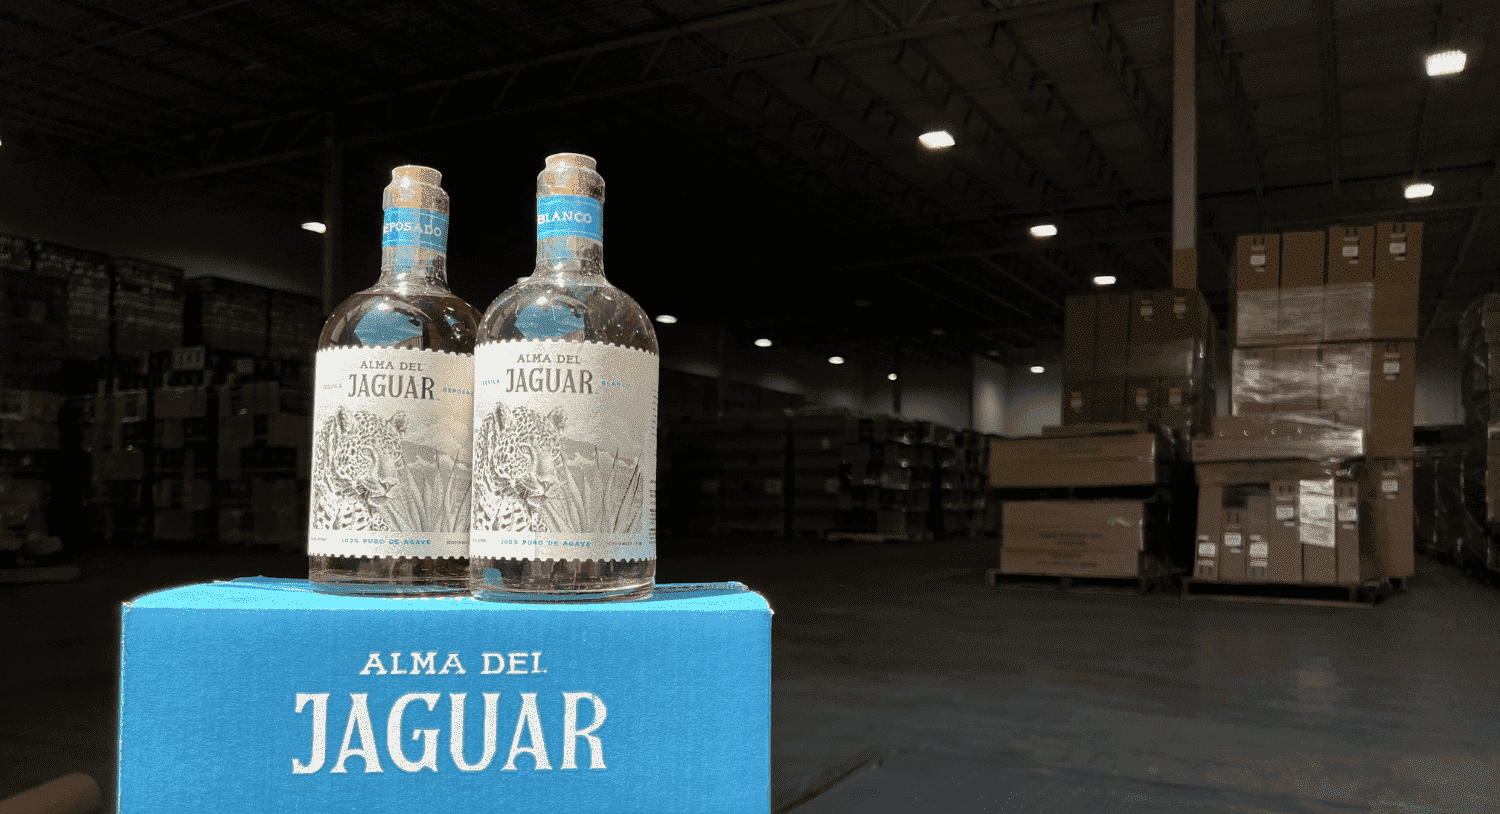 Alma del Jaguar bottles